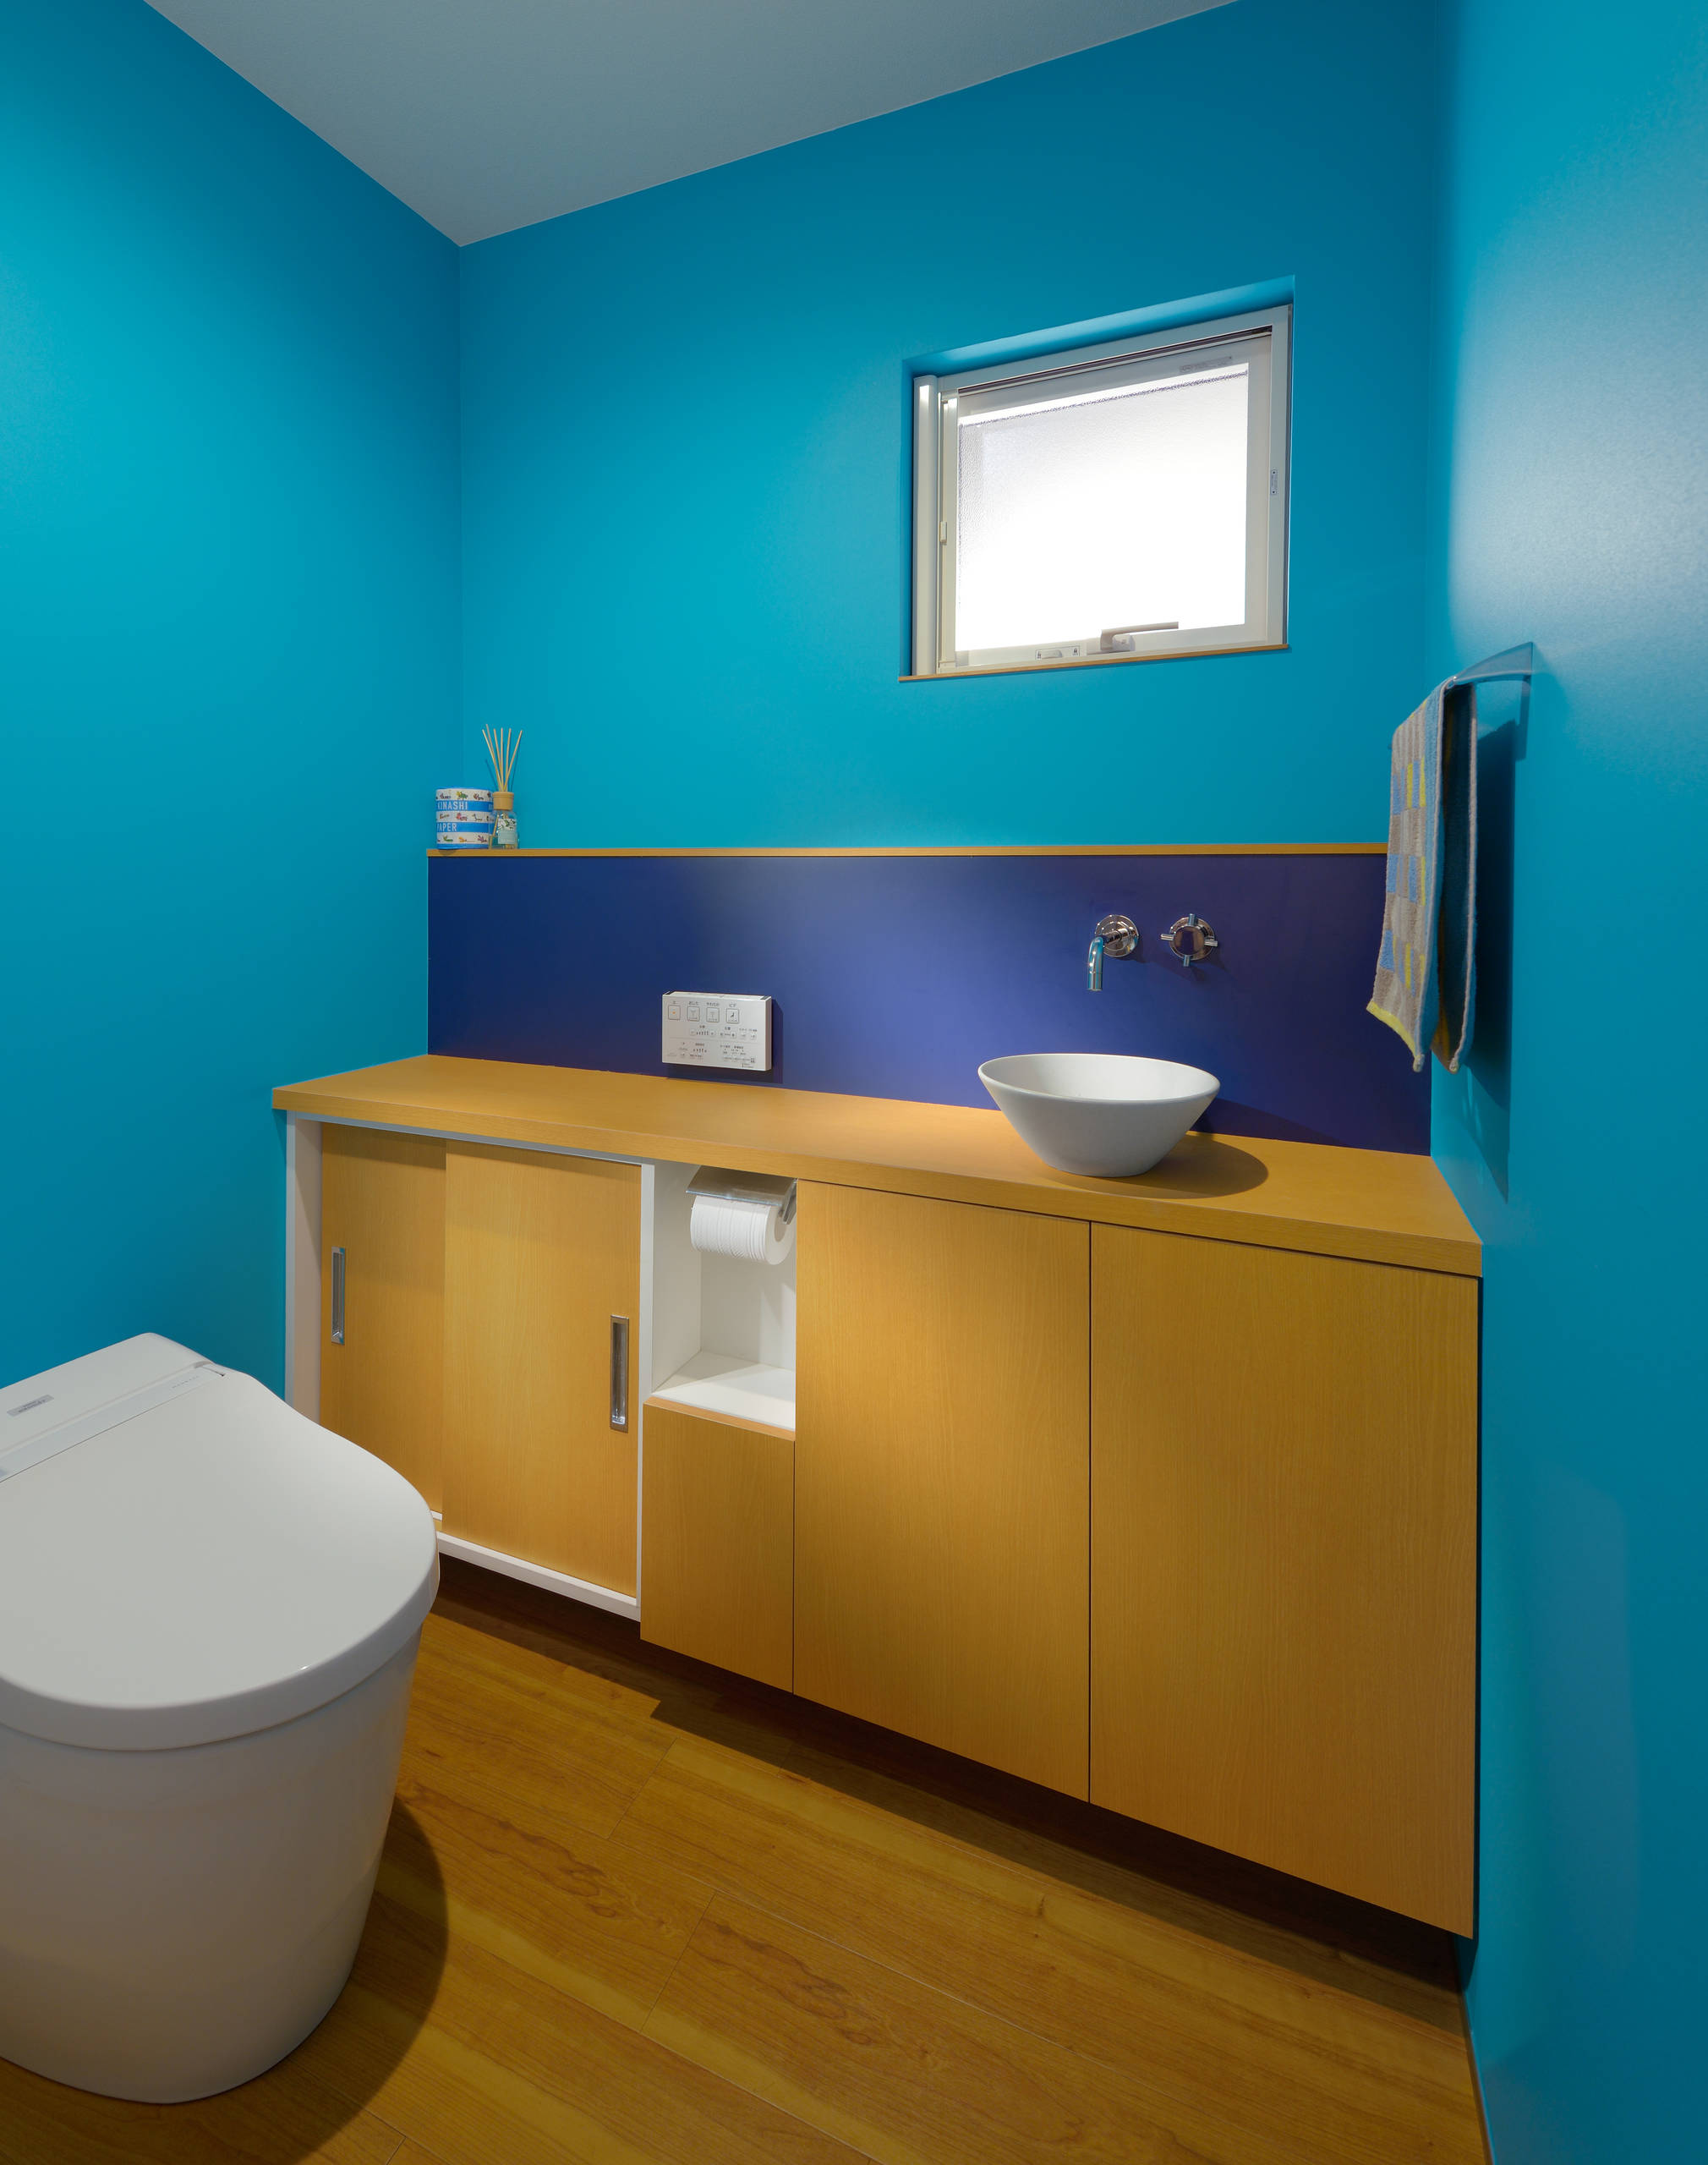 ターコイズブルーのおしゃれなトイレ 洗面所の画像 21年8月 Houzz ハウズ